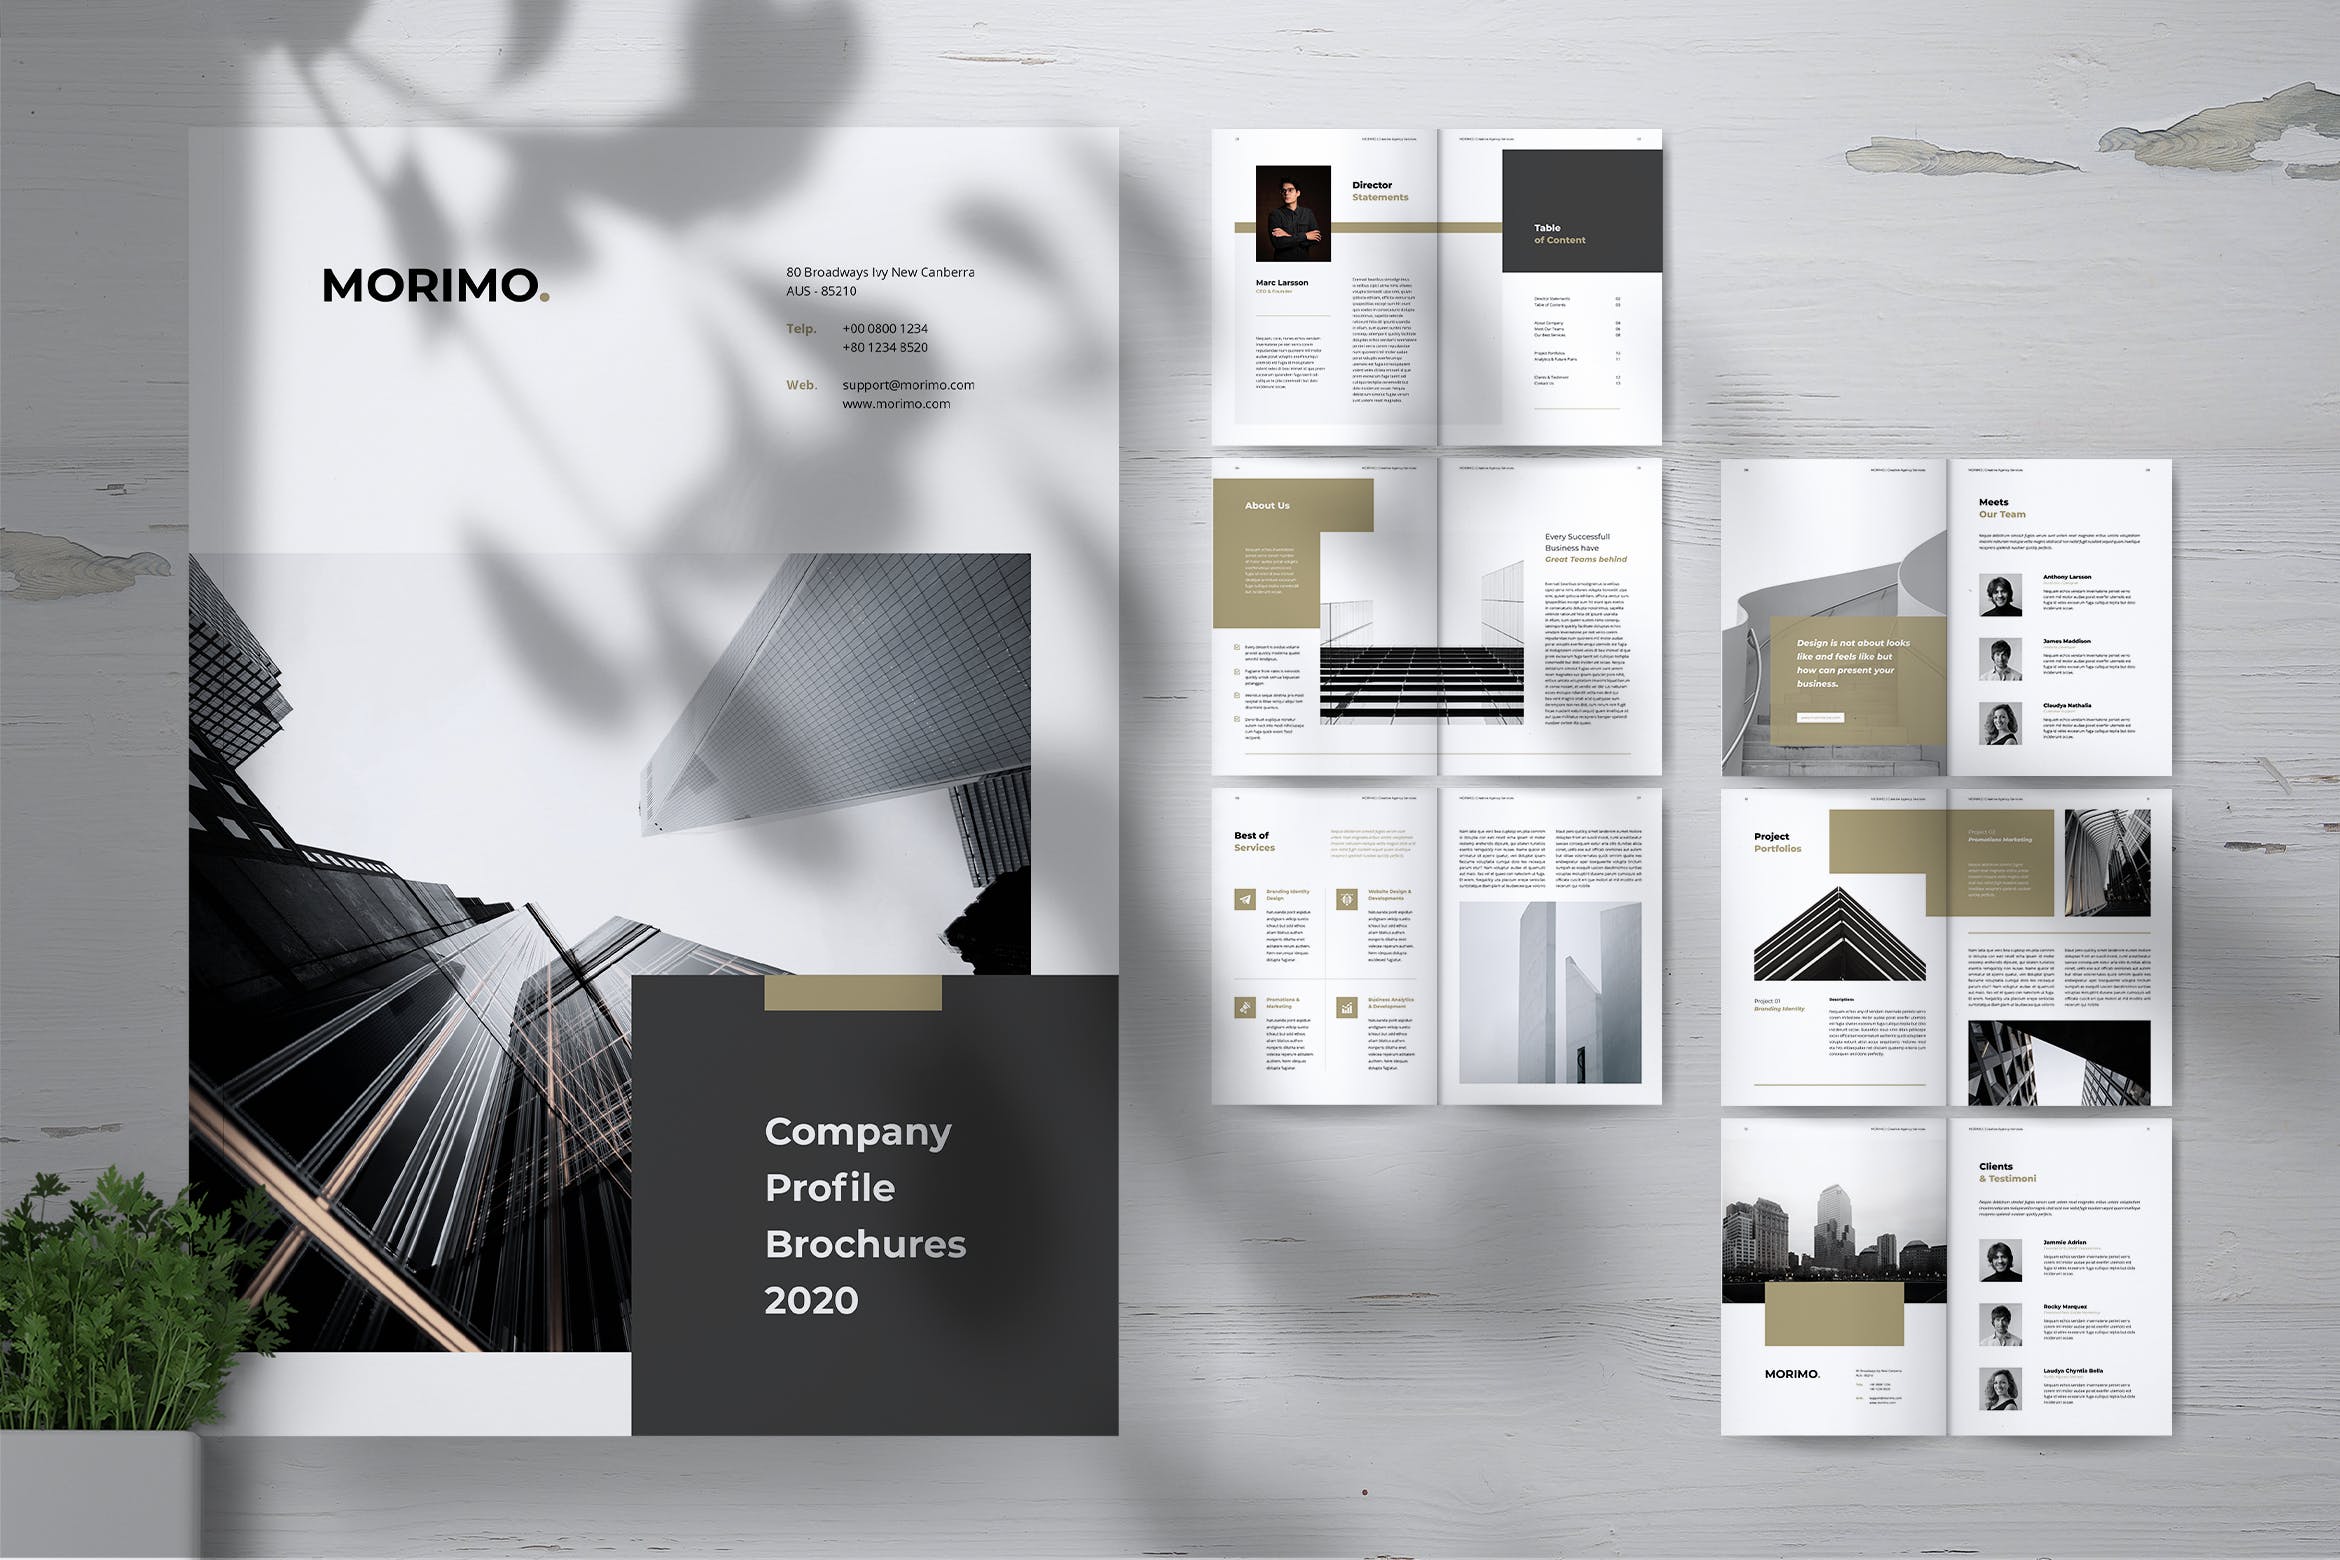 创意品牌设计公司企业宣传画册设计模板 MORIMO Creative Agency Company Profile Brochures插图